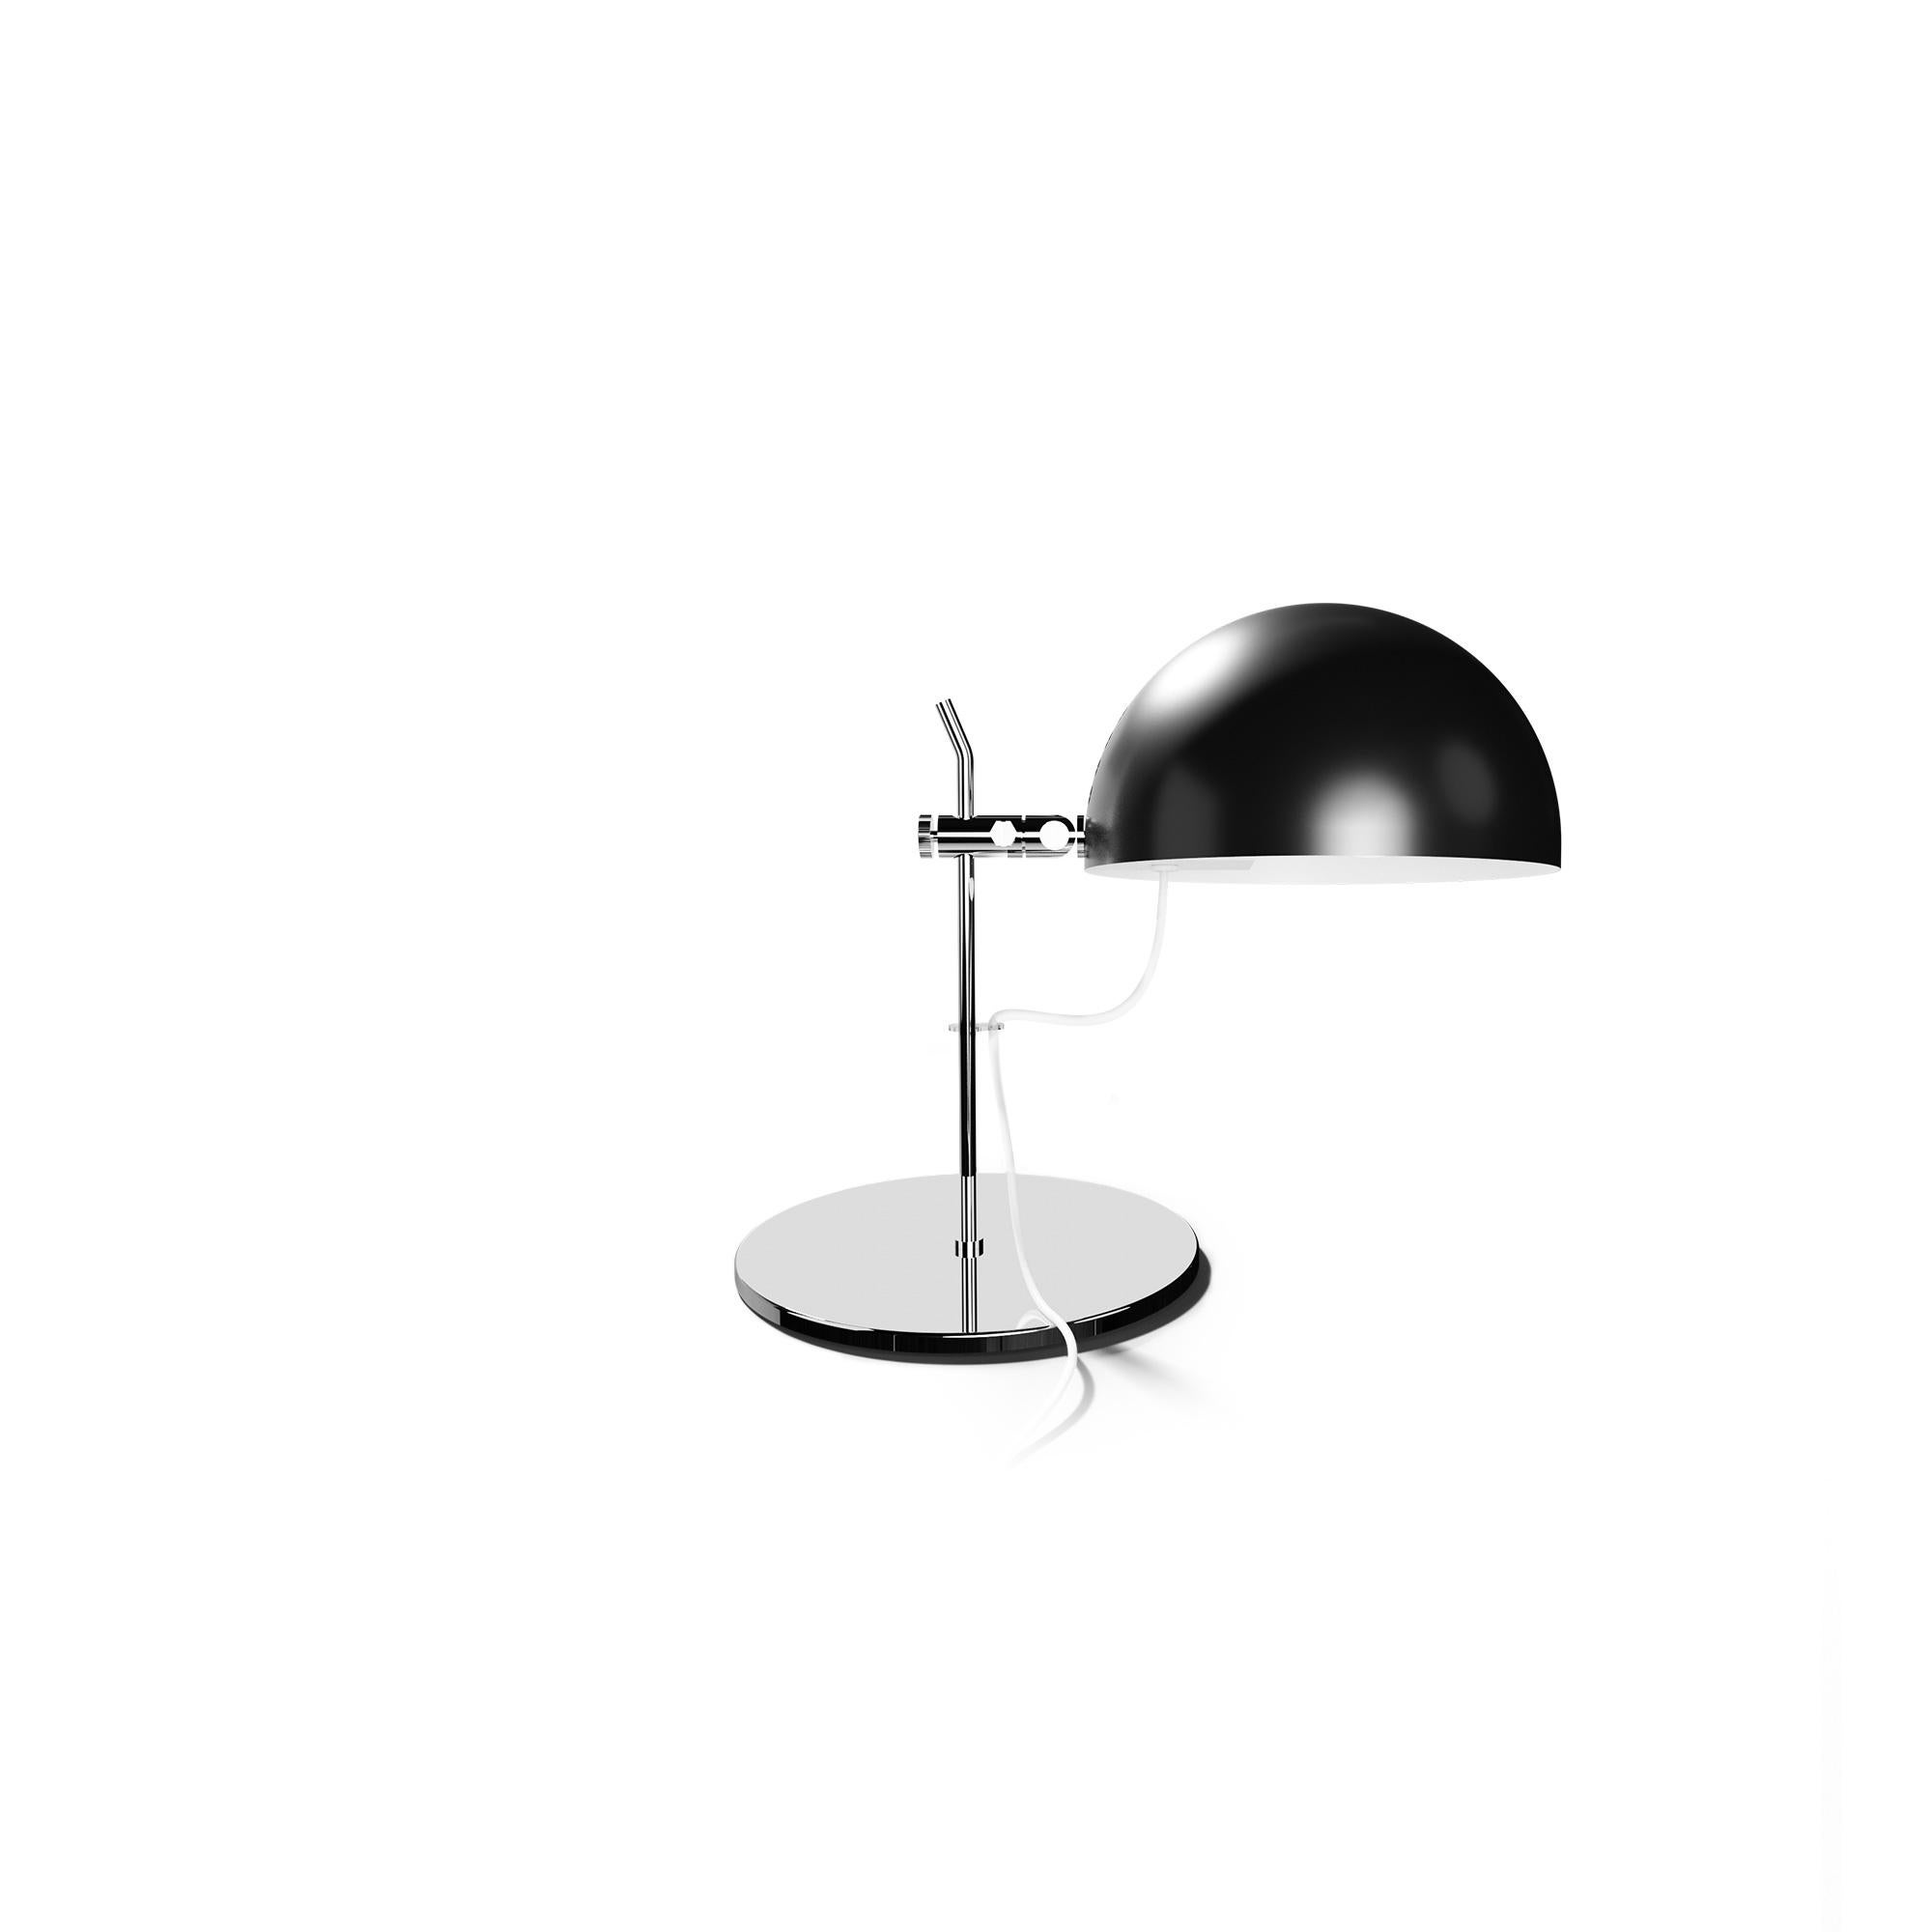 Alain Richard 'A21' Desk Lamp in Chrome for Disderot For Sale 8